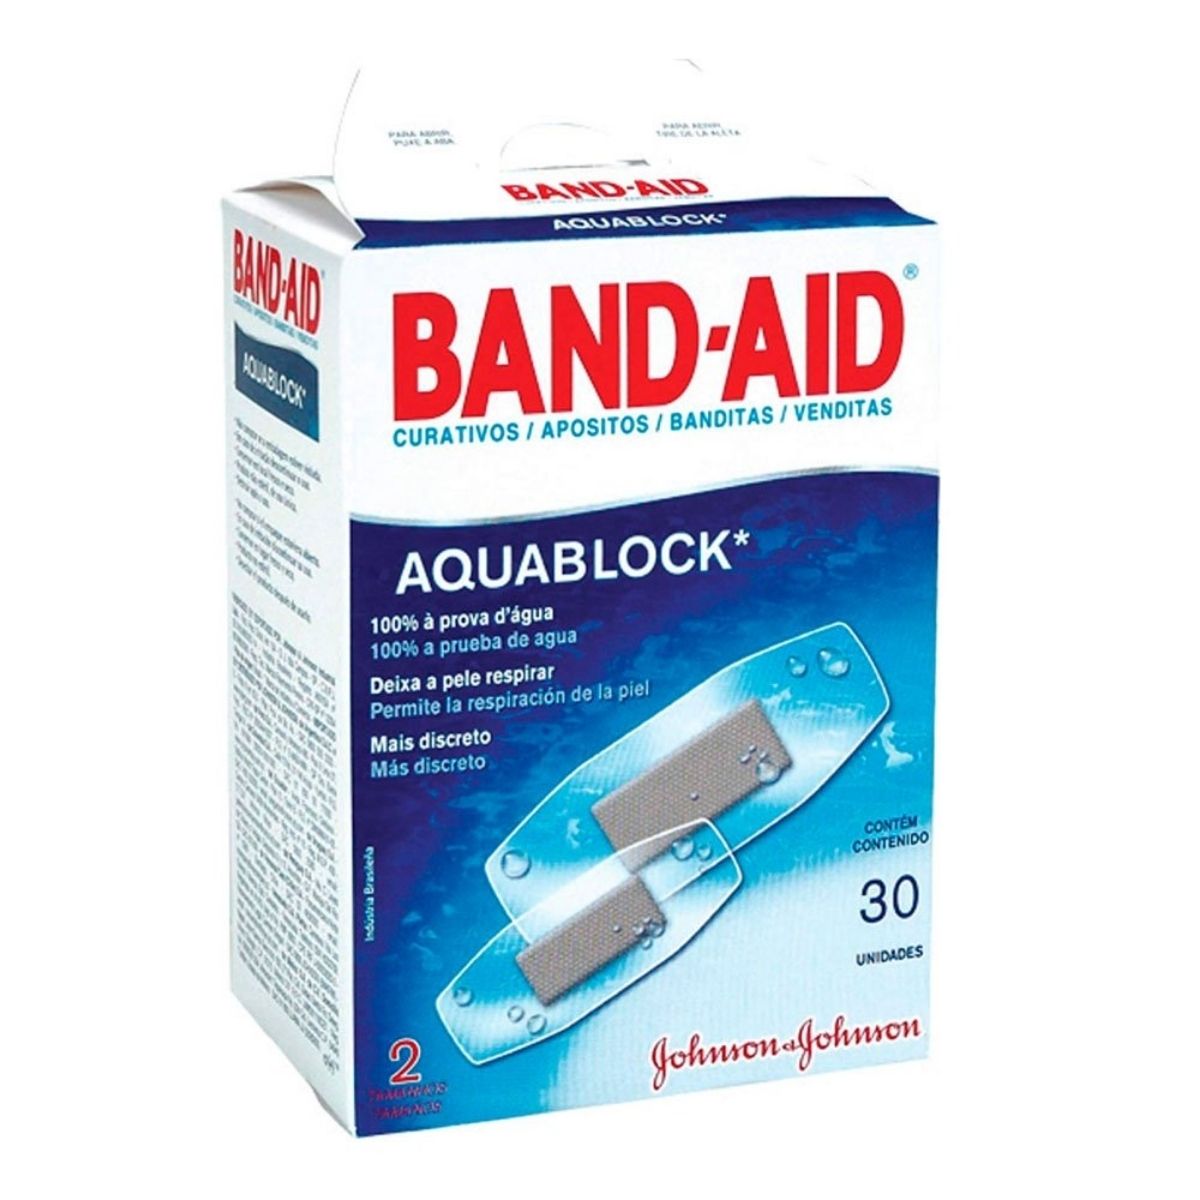 Curativo Band-Aid Aquablock 30 Unidades